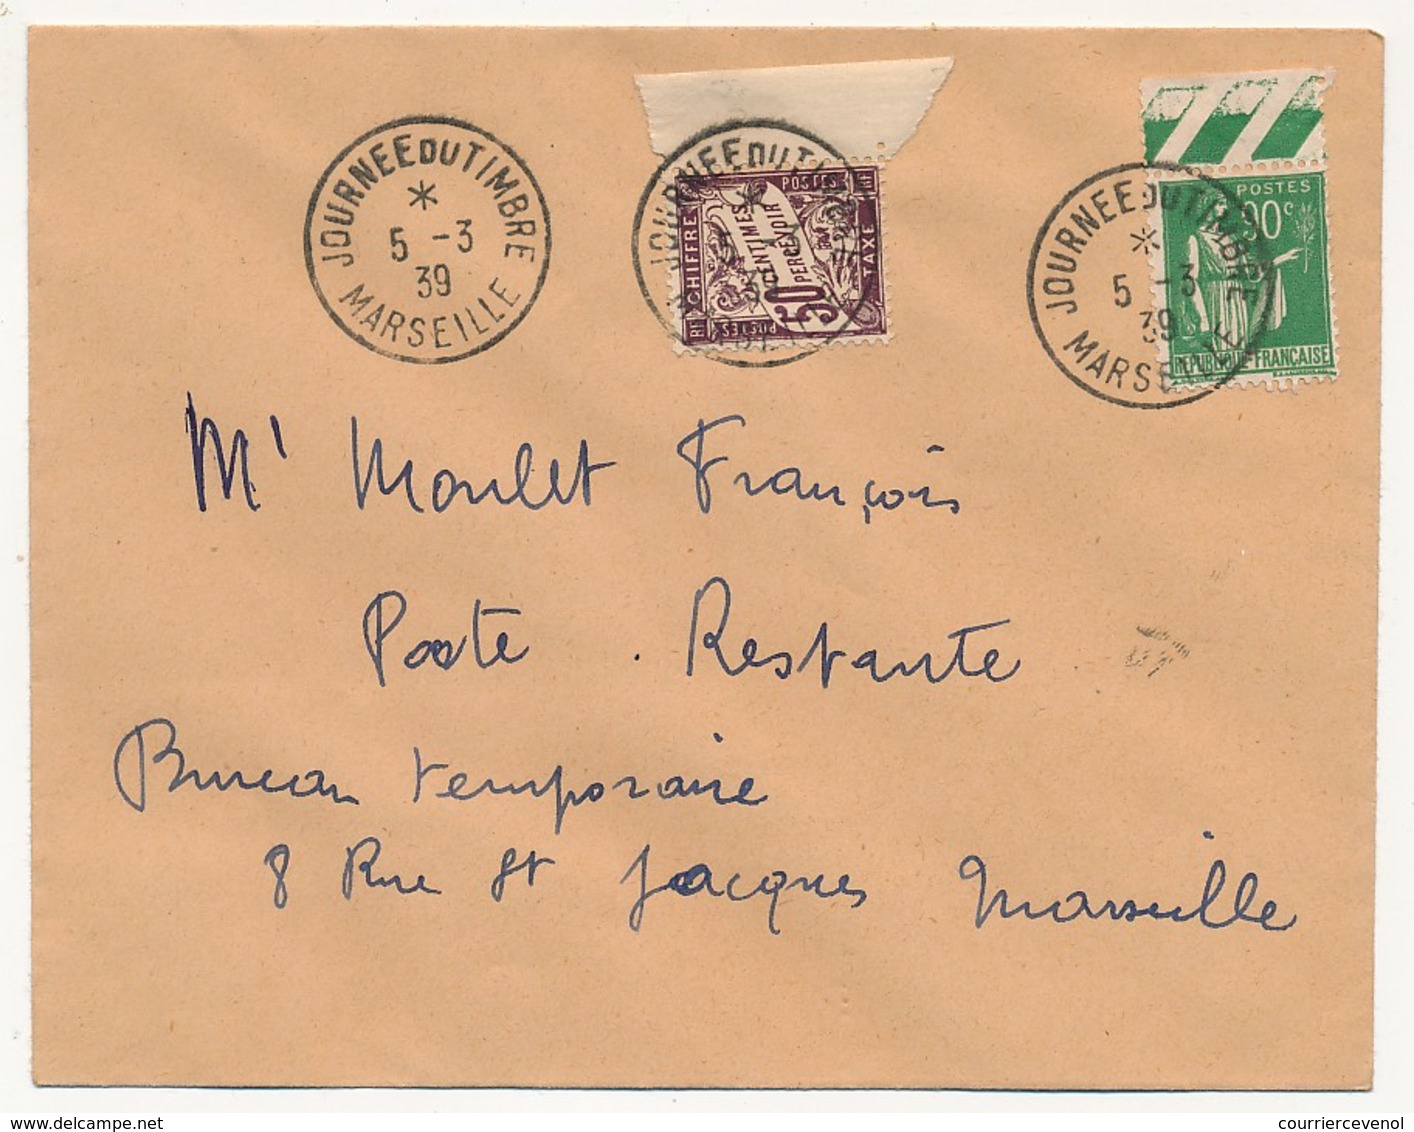 FRANCE => Enveloppe - Cachet "Journée Du Timbre MARSEILLE" 5/3/1939 Affr 90c Paix + Taxe Poste Restante - Covers & Documents